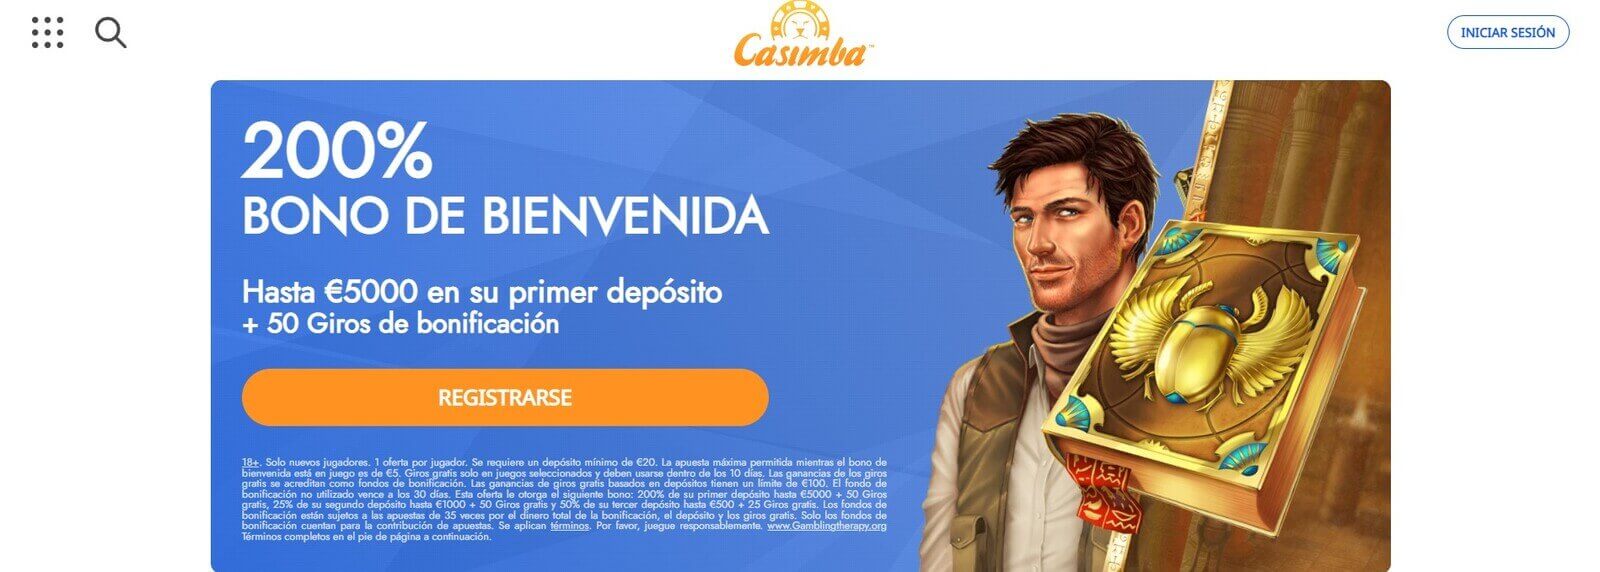 Casimba Casino online en Argentina 